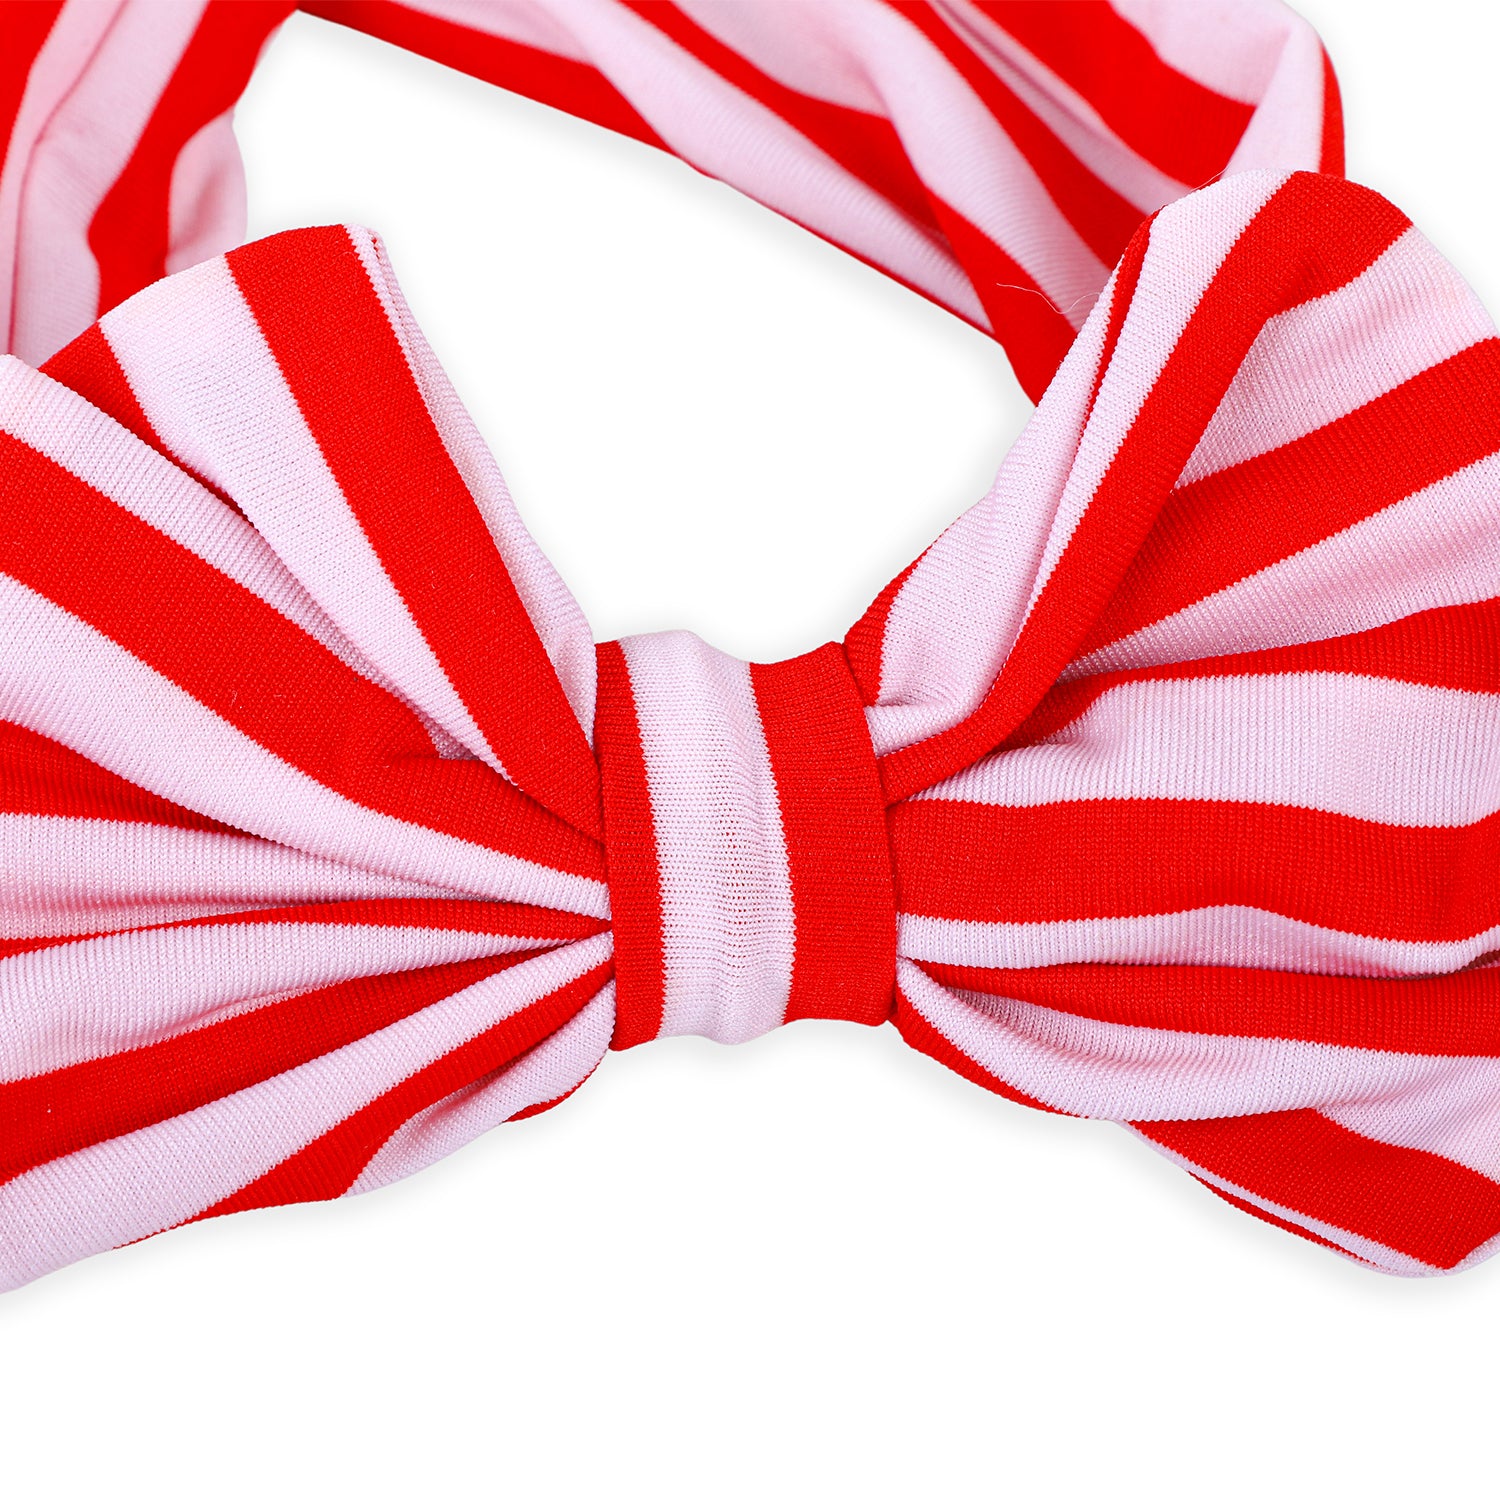 Stripes Soft Bow Headband - Red - Baby Moo